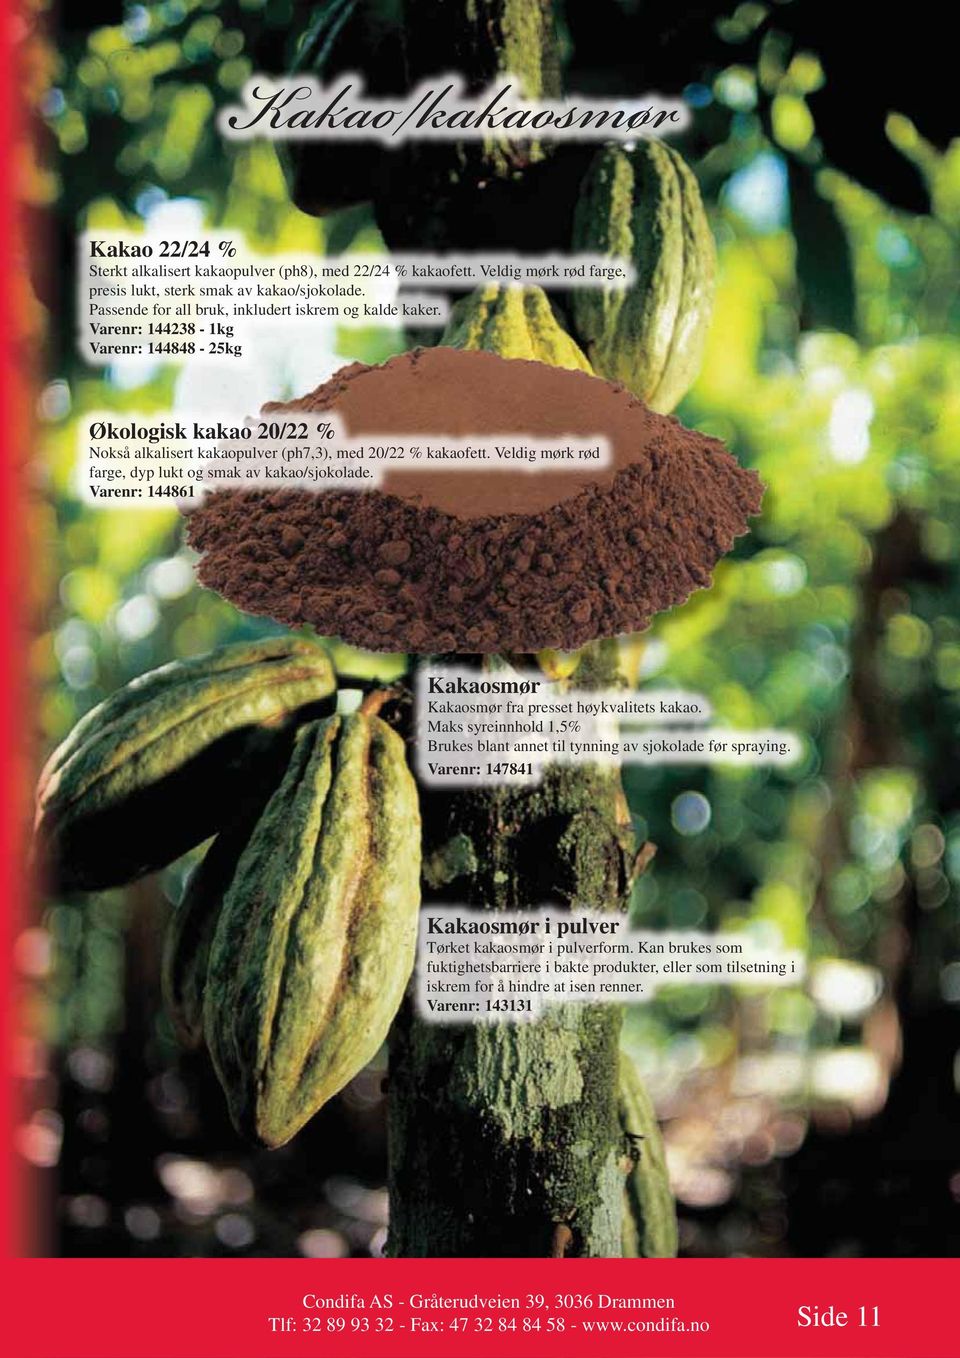 Veldig mørk rød farge, dyp lukt og smak av kakao/sjokolade. Varenr: 144861 Kakaosmør Kakaosmør fra presset høykvalitets kakao.